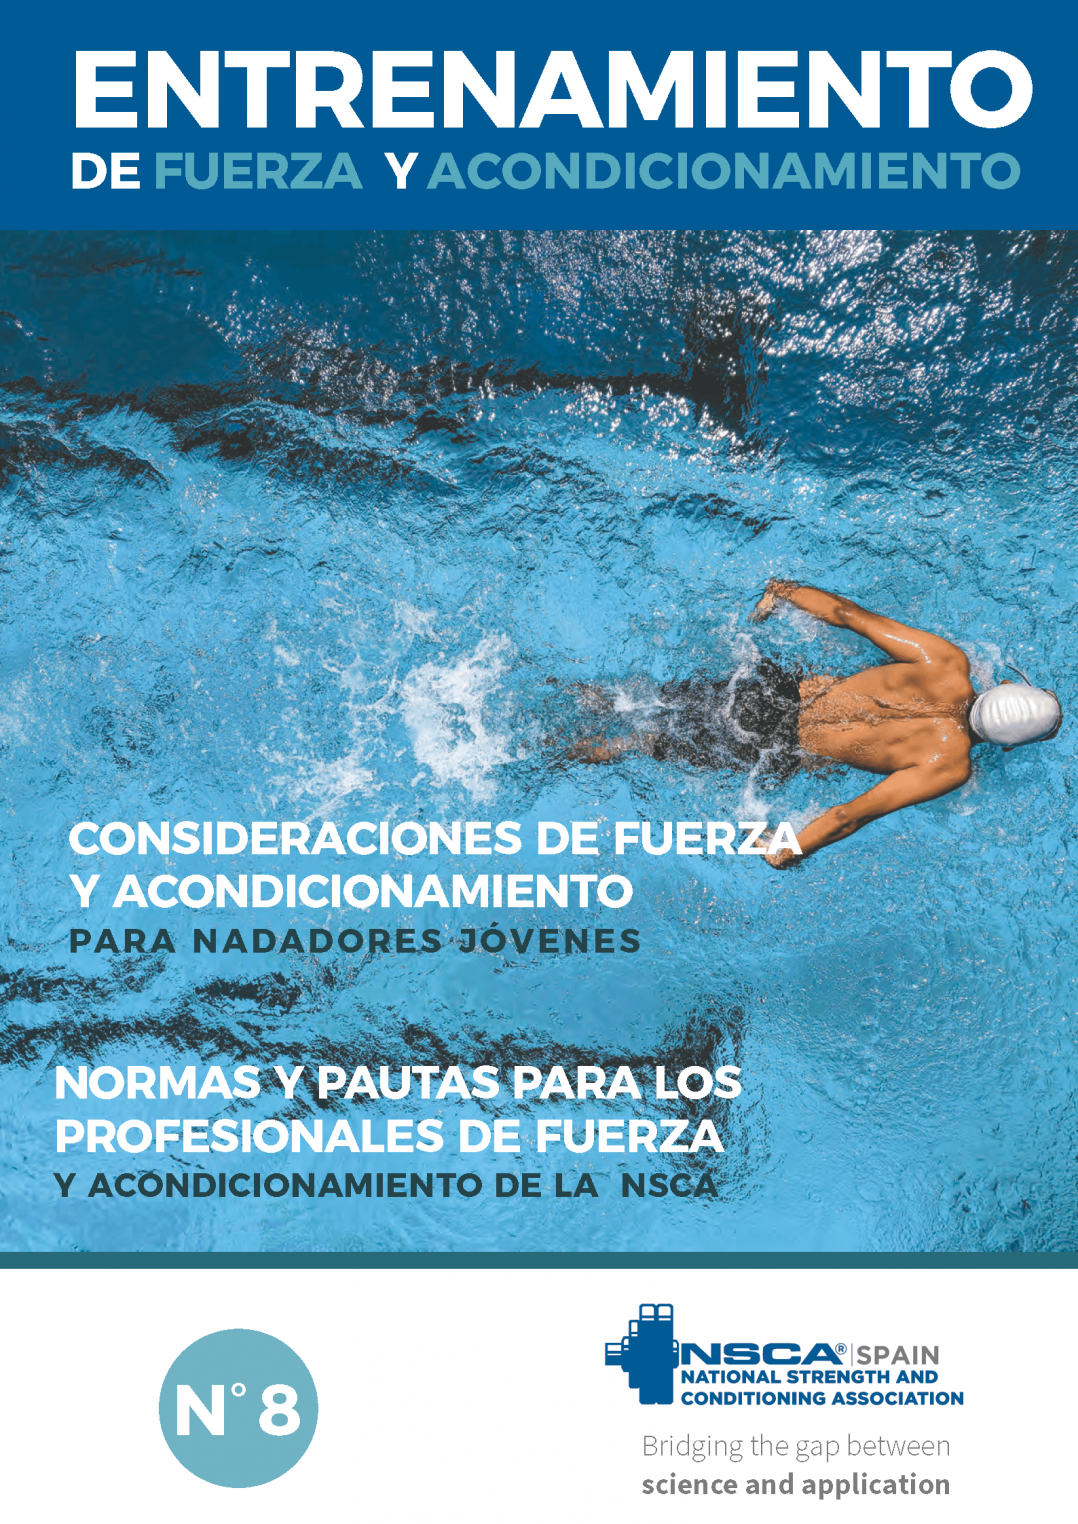 Nº 8 Journal NSCA Spain: Entrenamiento de fuerza y acondicionamiento físico - Junio 2018